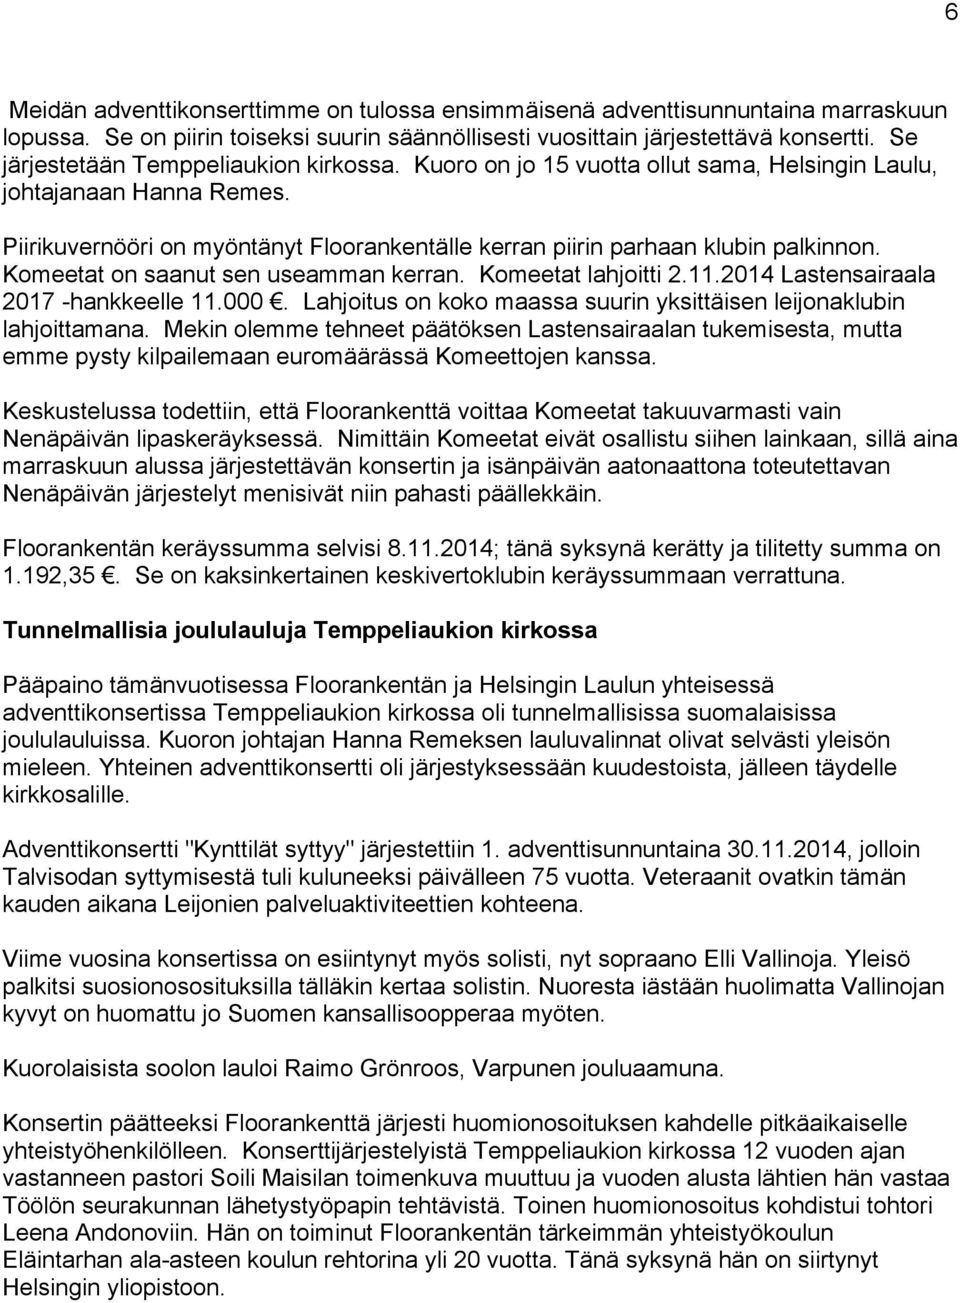 Piirikuvernööri on myöntänyt Floorankentälle kerran piirin parhaan klubin palkinnon. Komeetat on saanut sen useamman kerran. Komeetat lahjoitti 2.11.2014 Lastensairaala 2017 -hankkeelle 11.000.